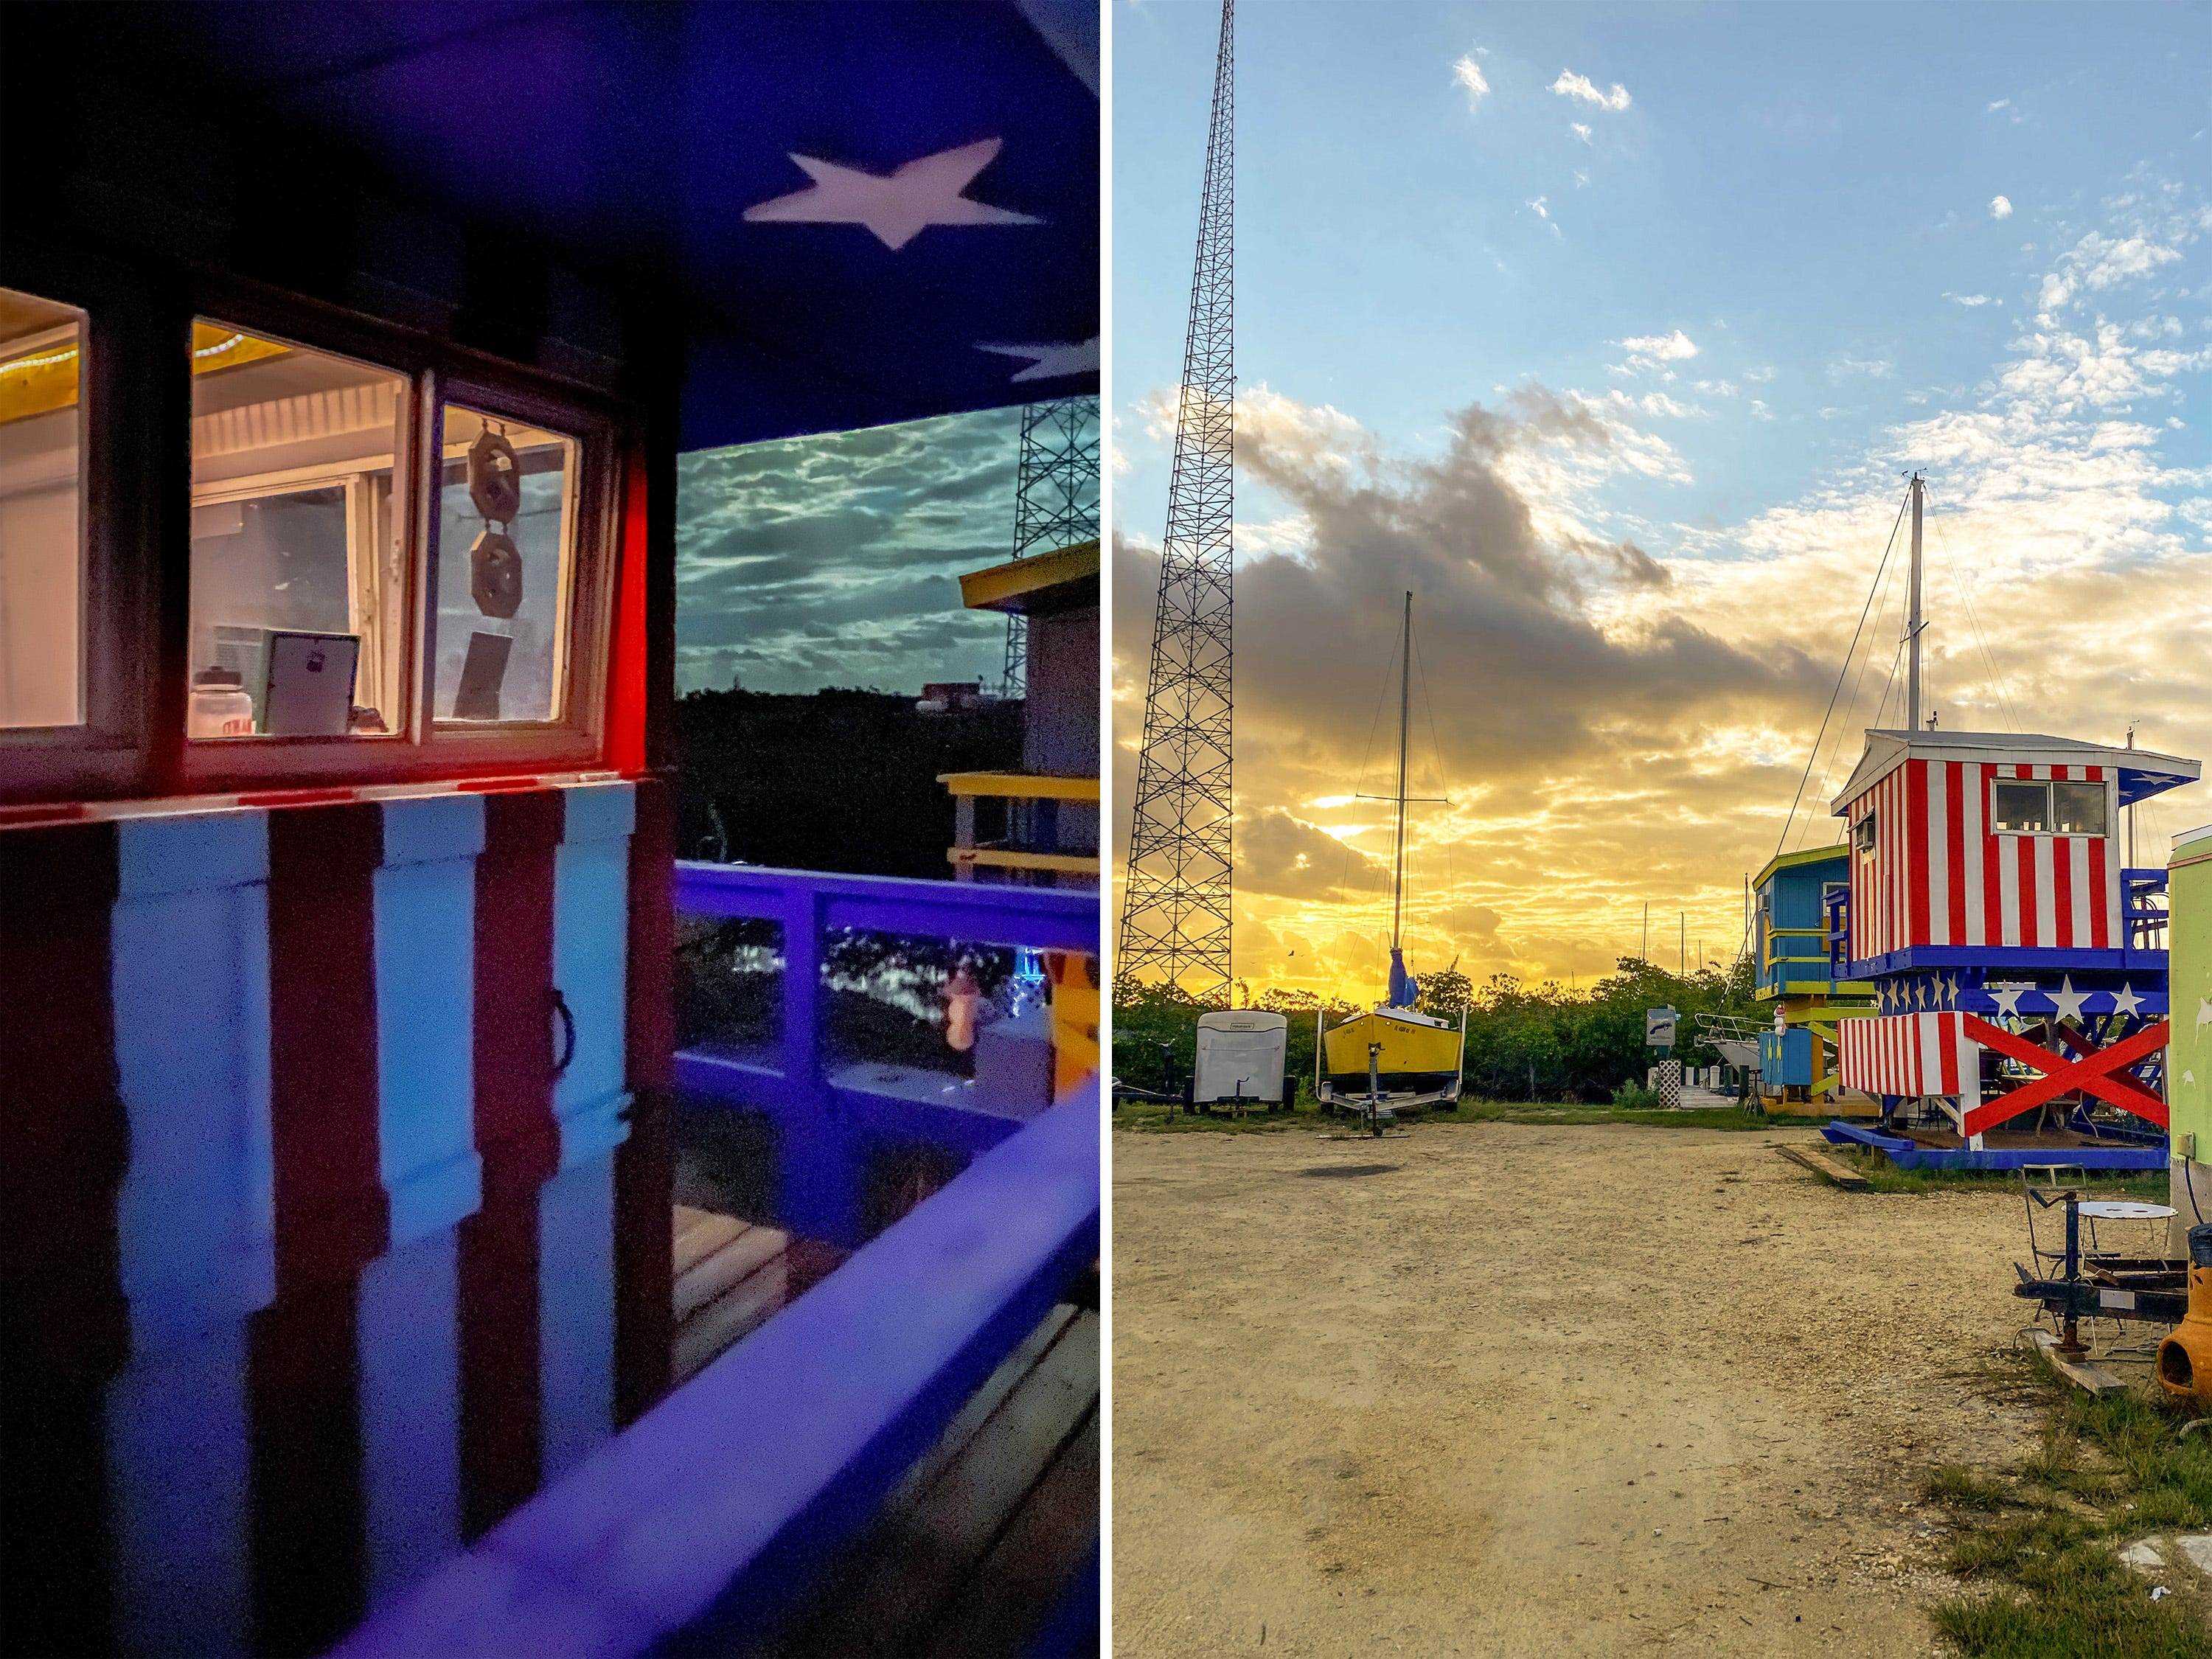 Fotos nebeneinander zeigen die Außenseite des Turms bei Nacht und bei Sonnenaufgang